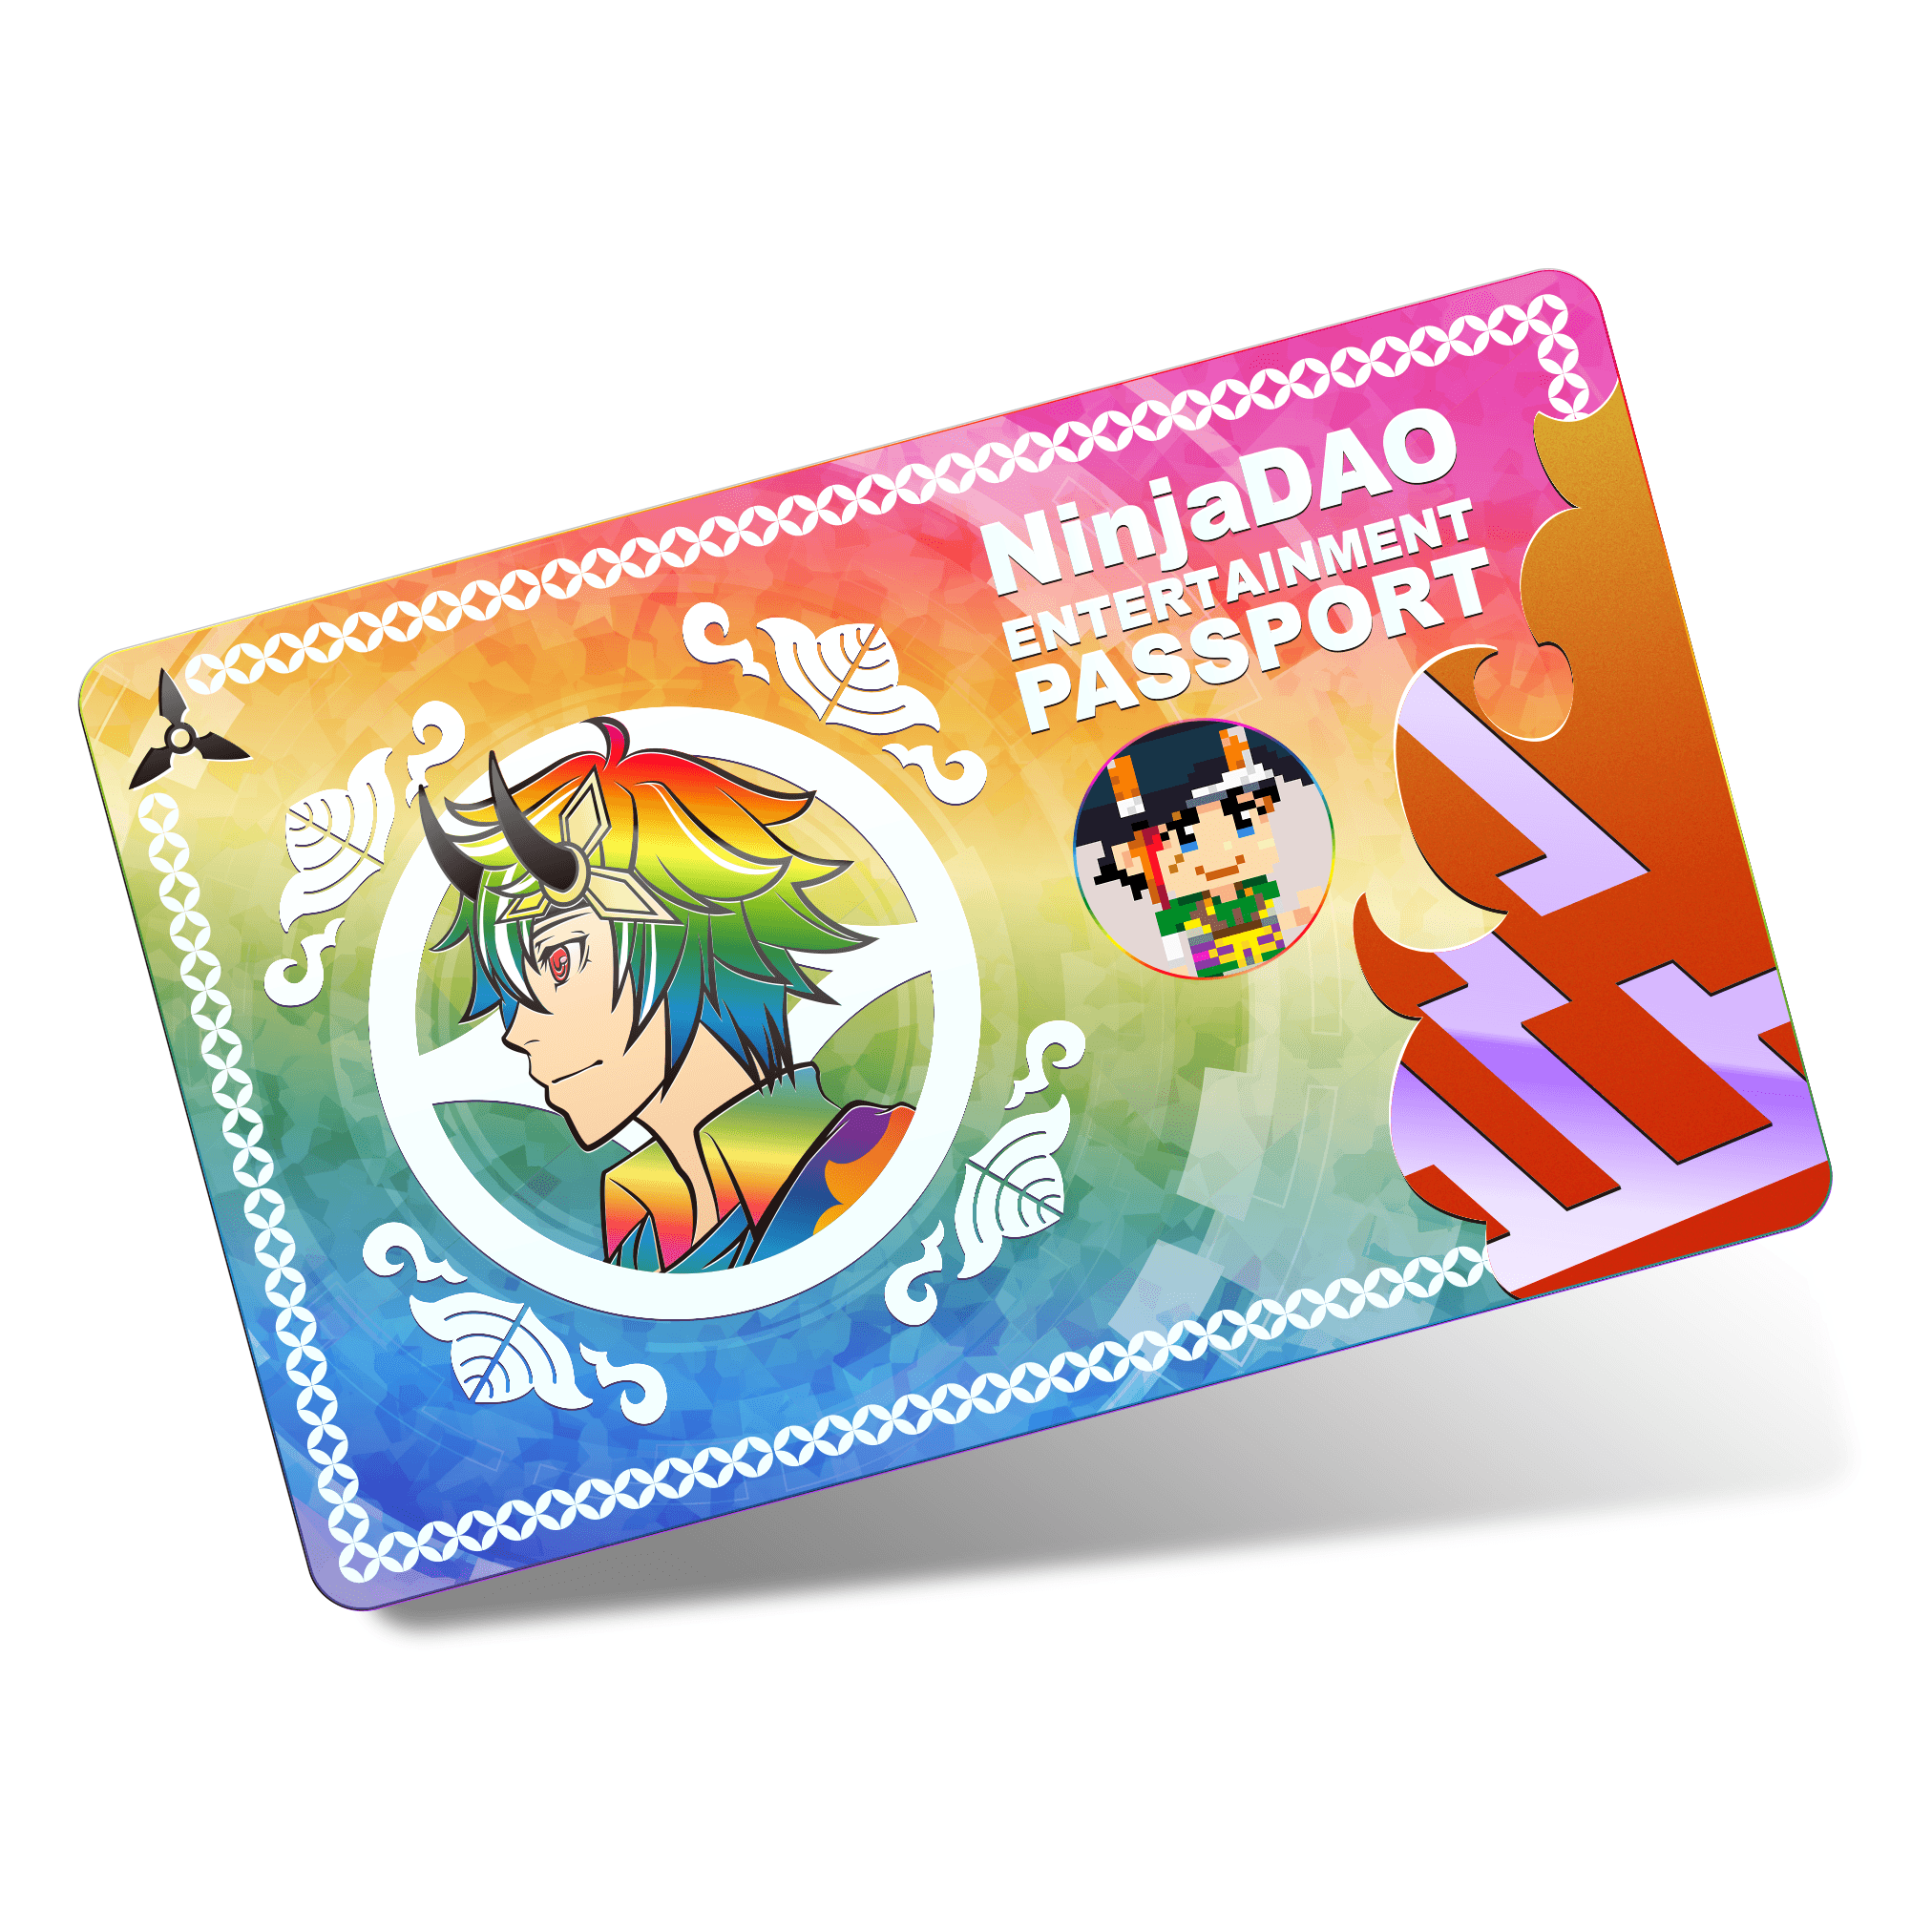 Rainbow card